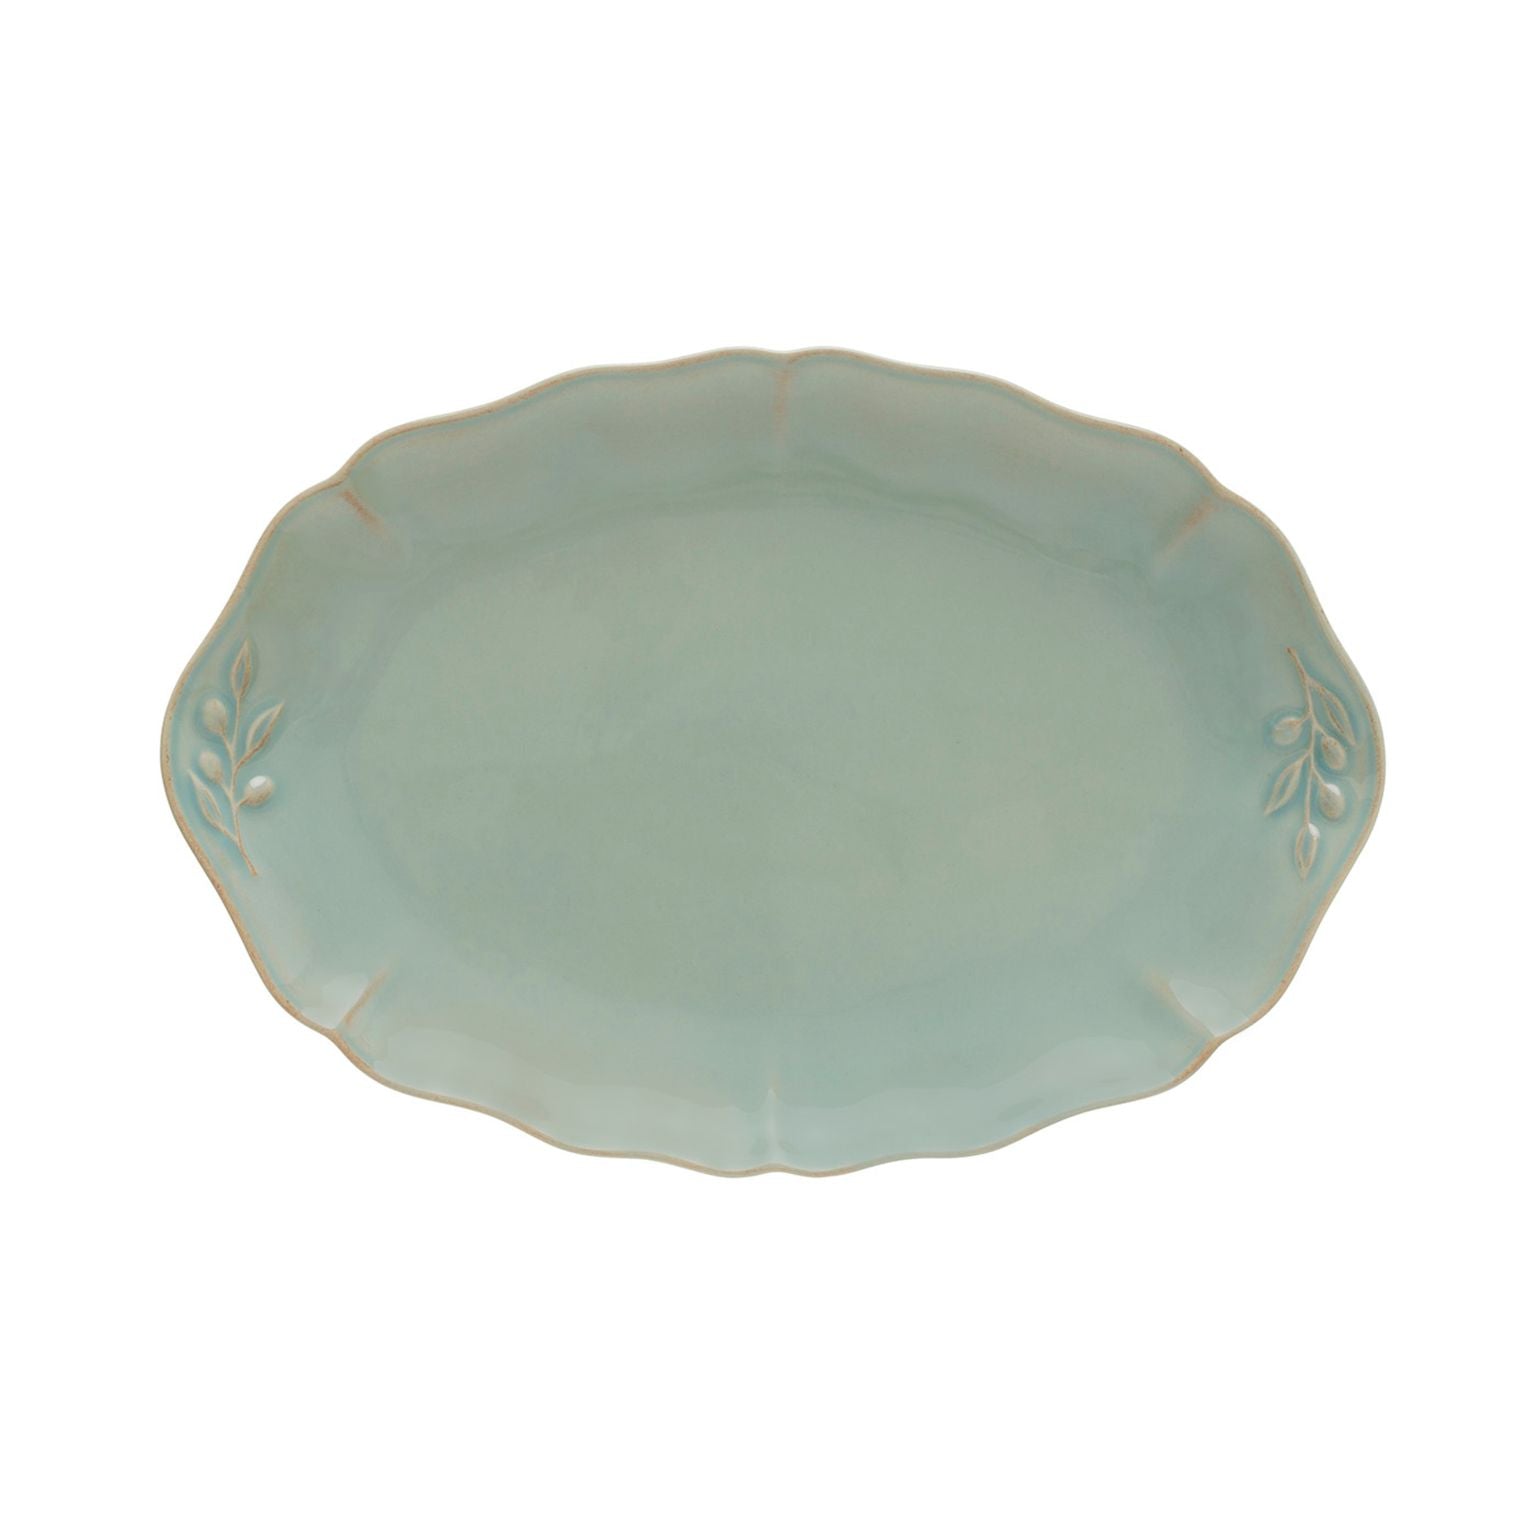 Alentejo Oval Platter 13" Turquoise